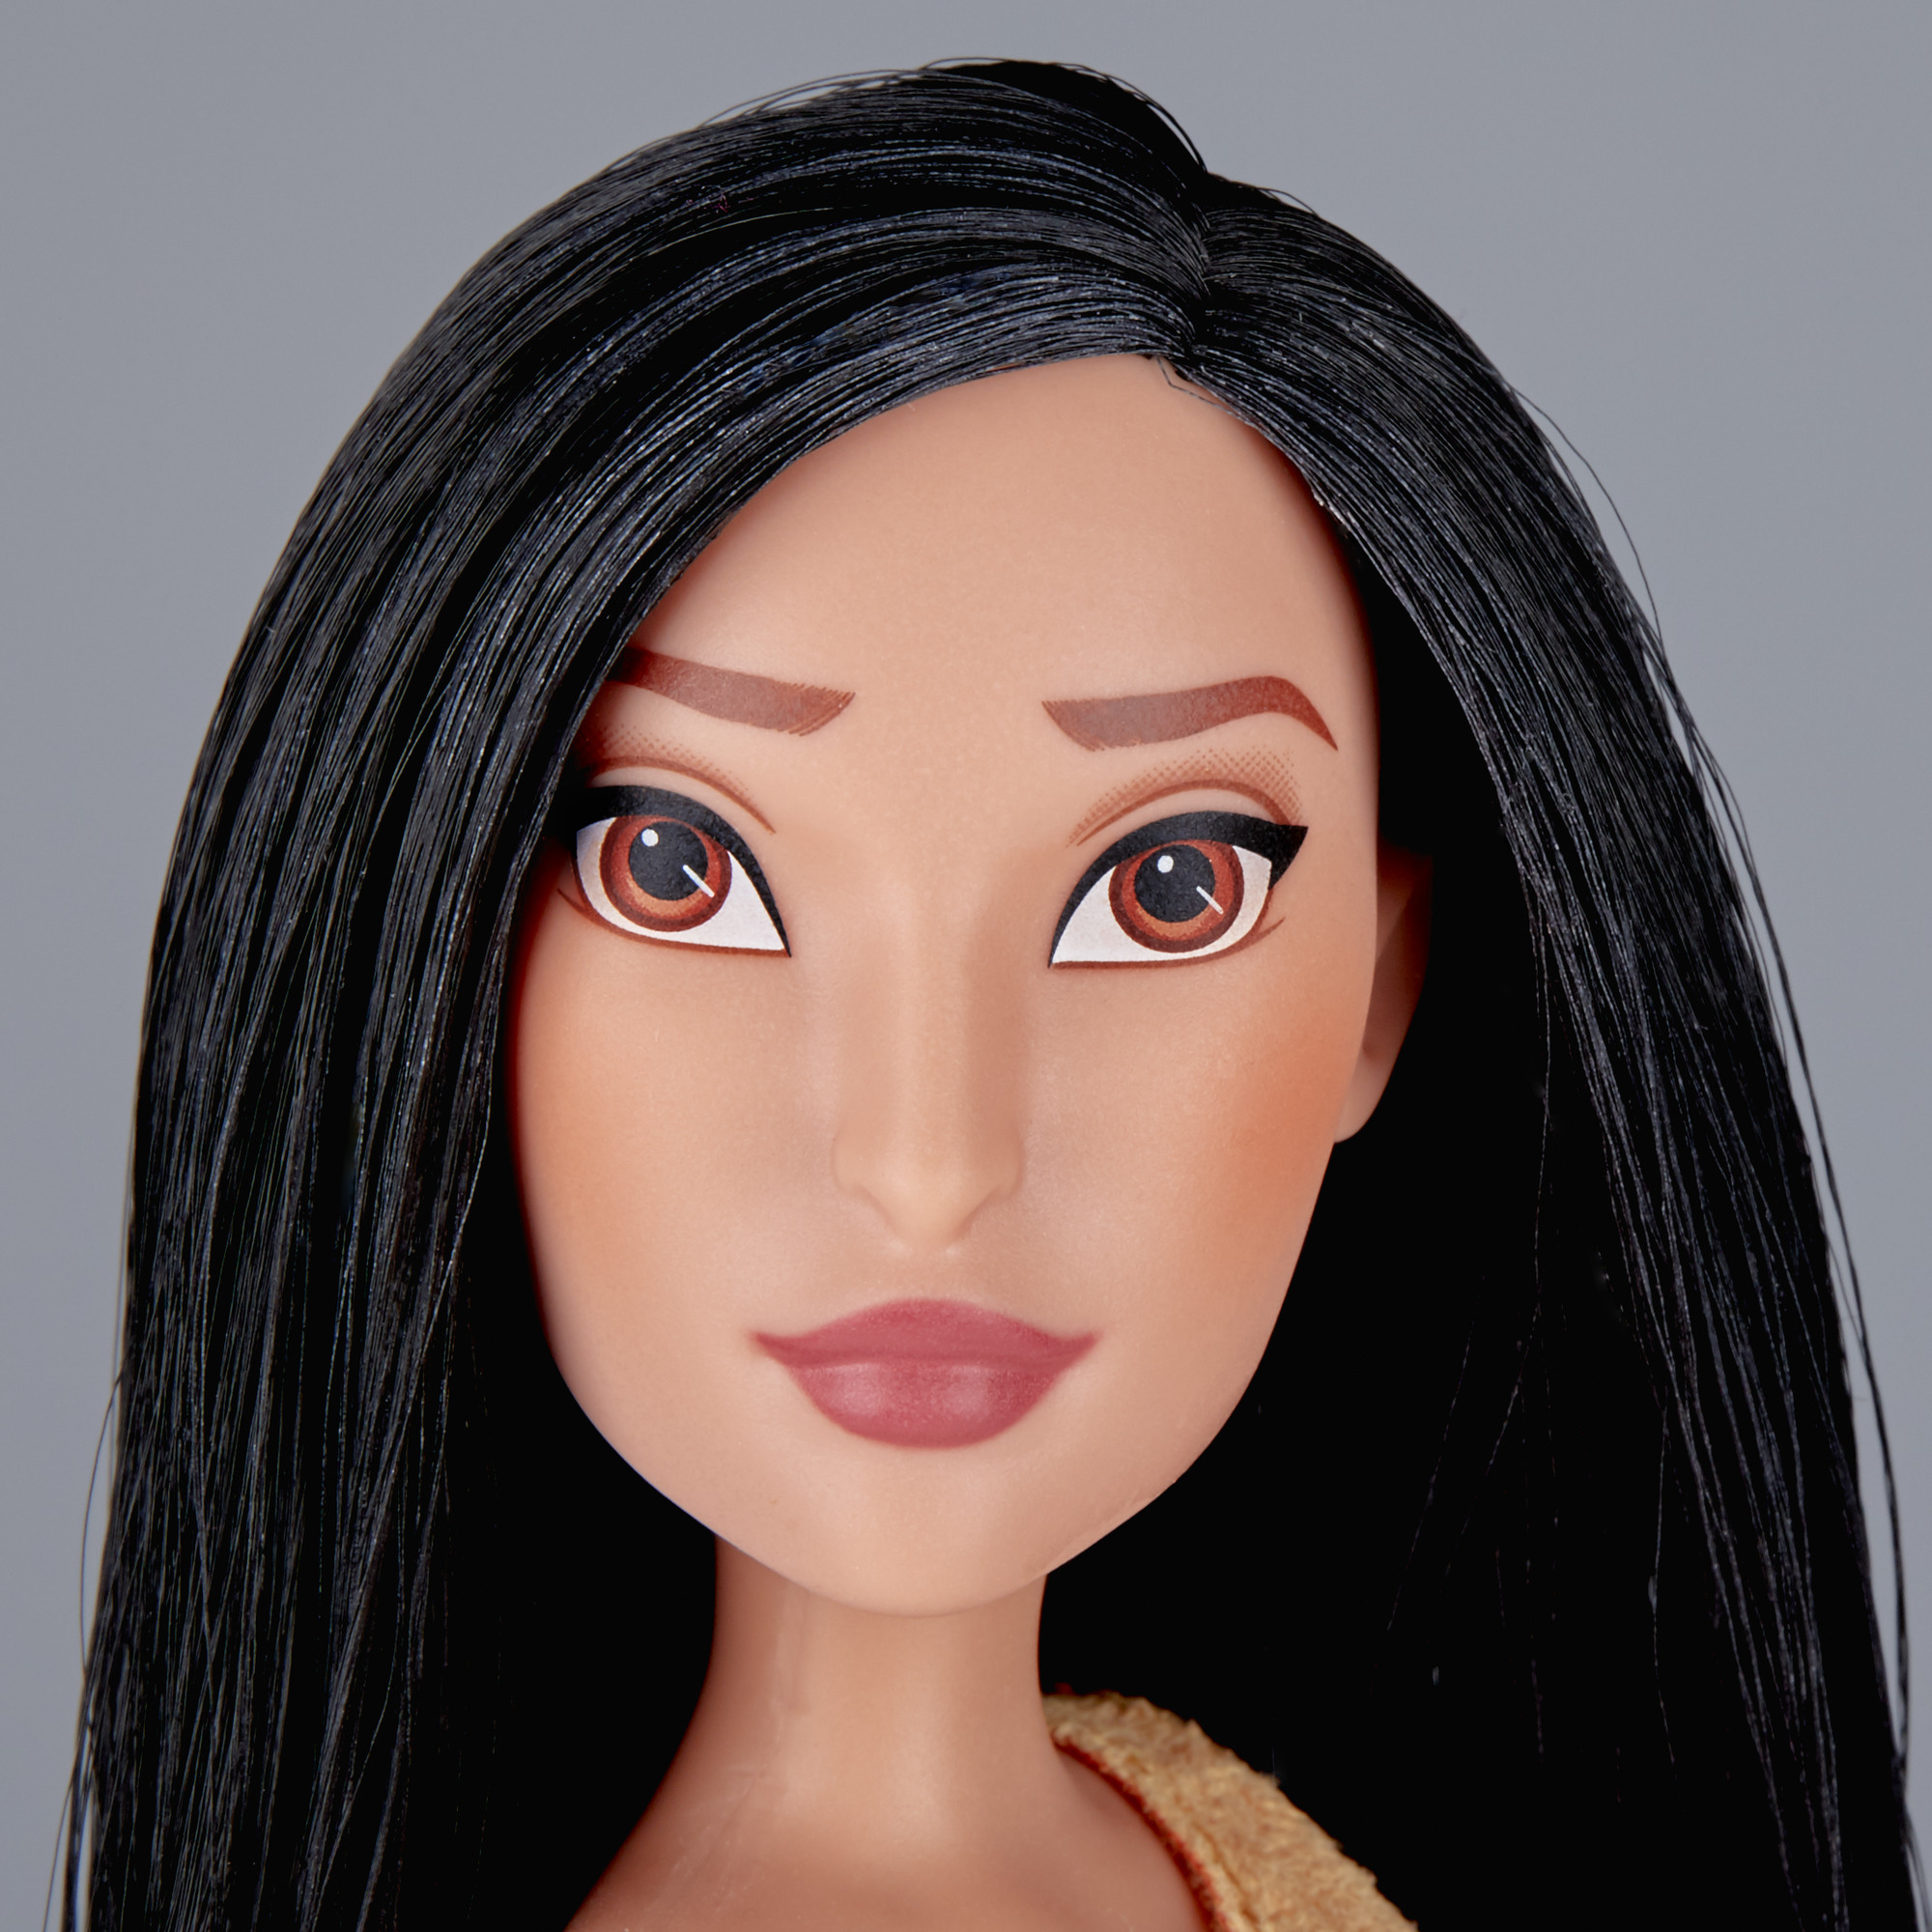 Disney Princess Royal Shimmer Pocahontas Doll - image 5 of 5